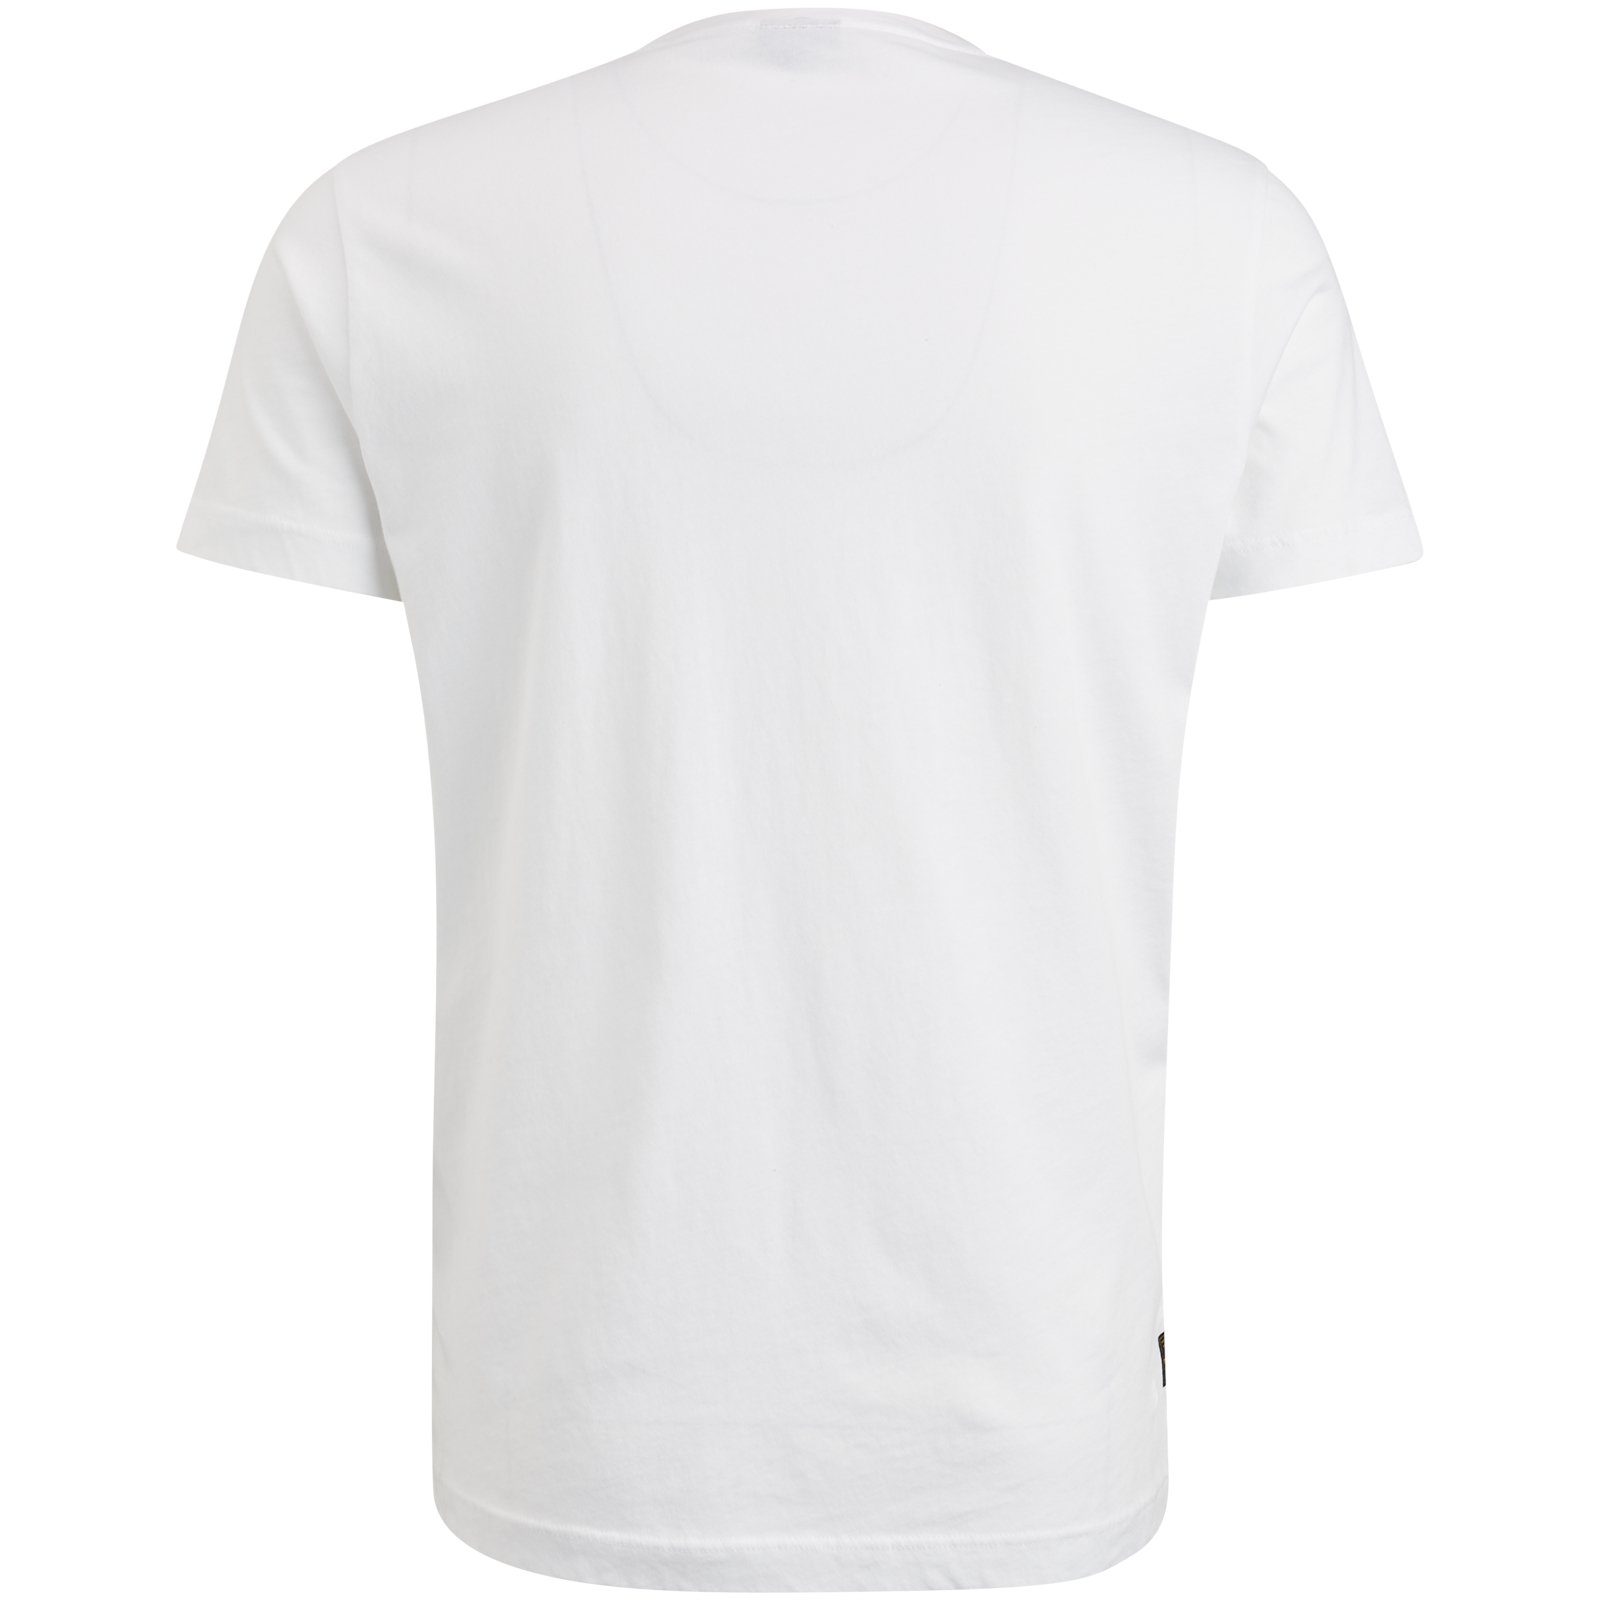 PME LEGEND Bright T-Shirt White